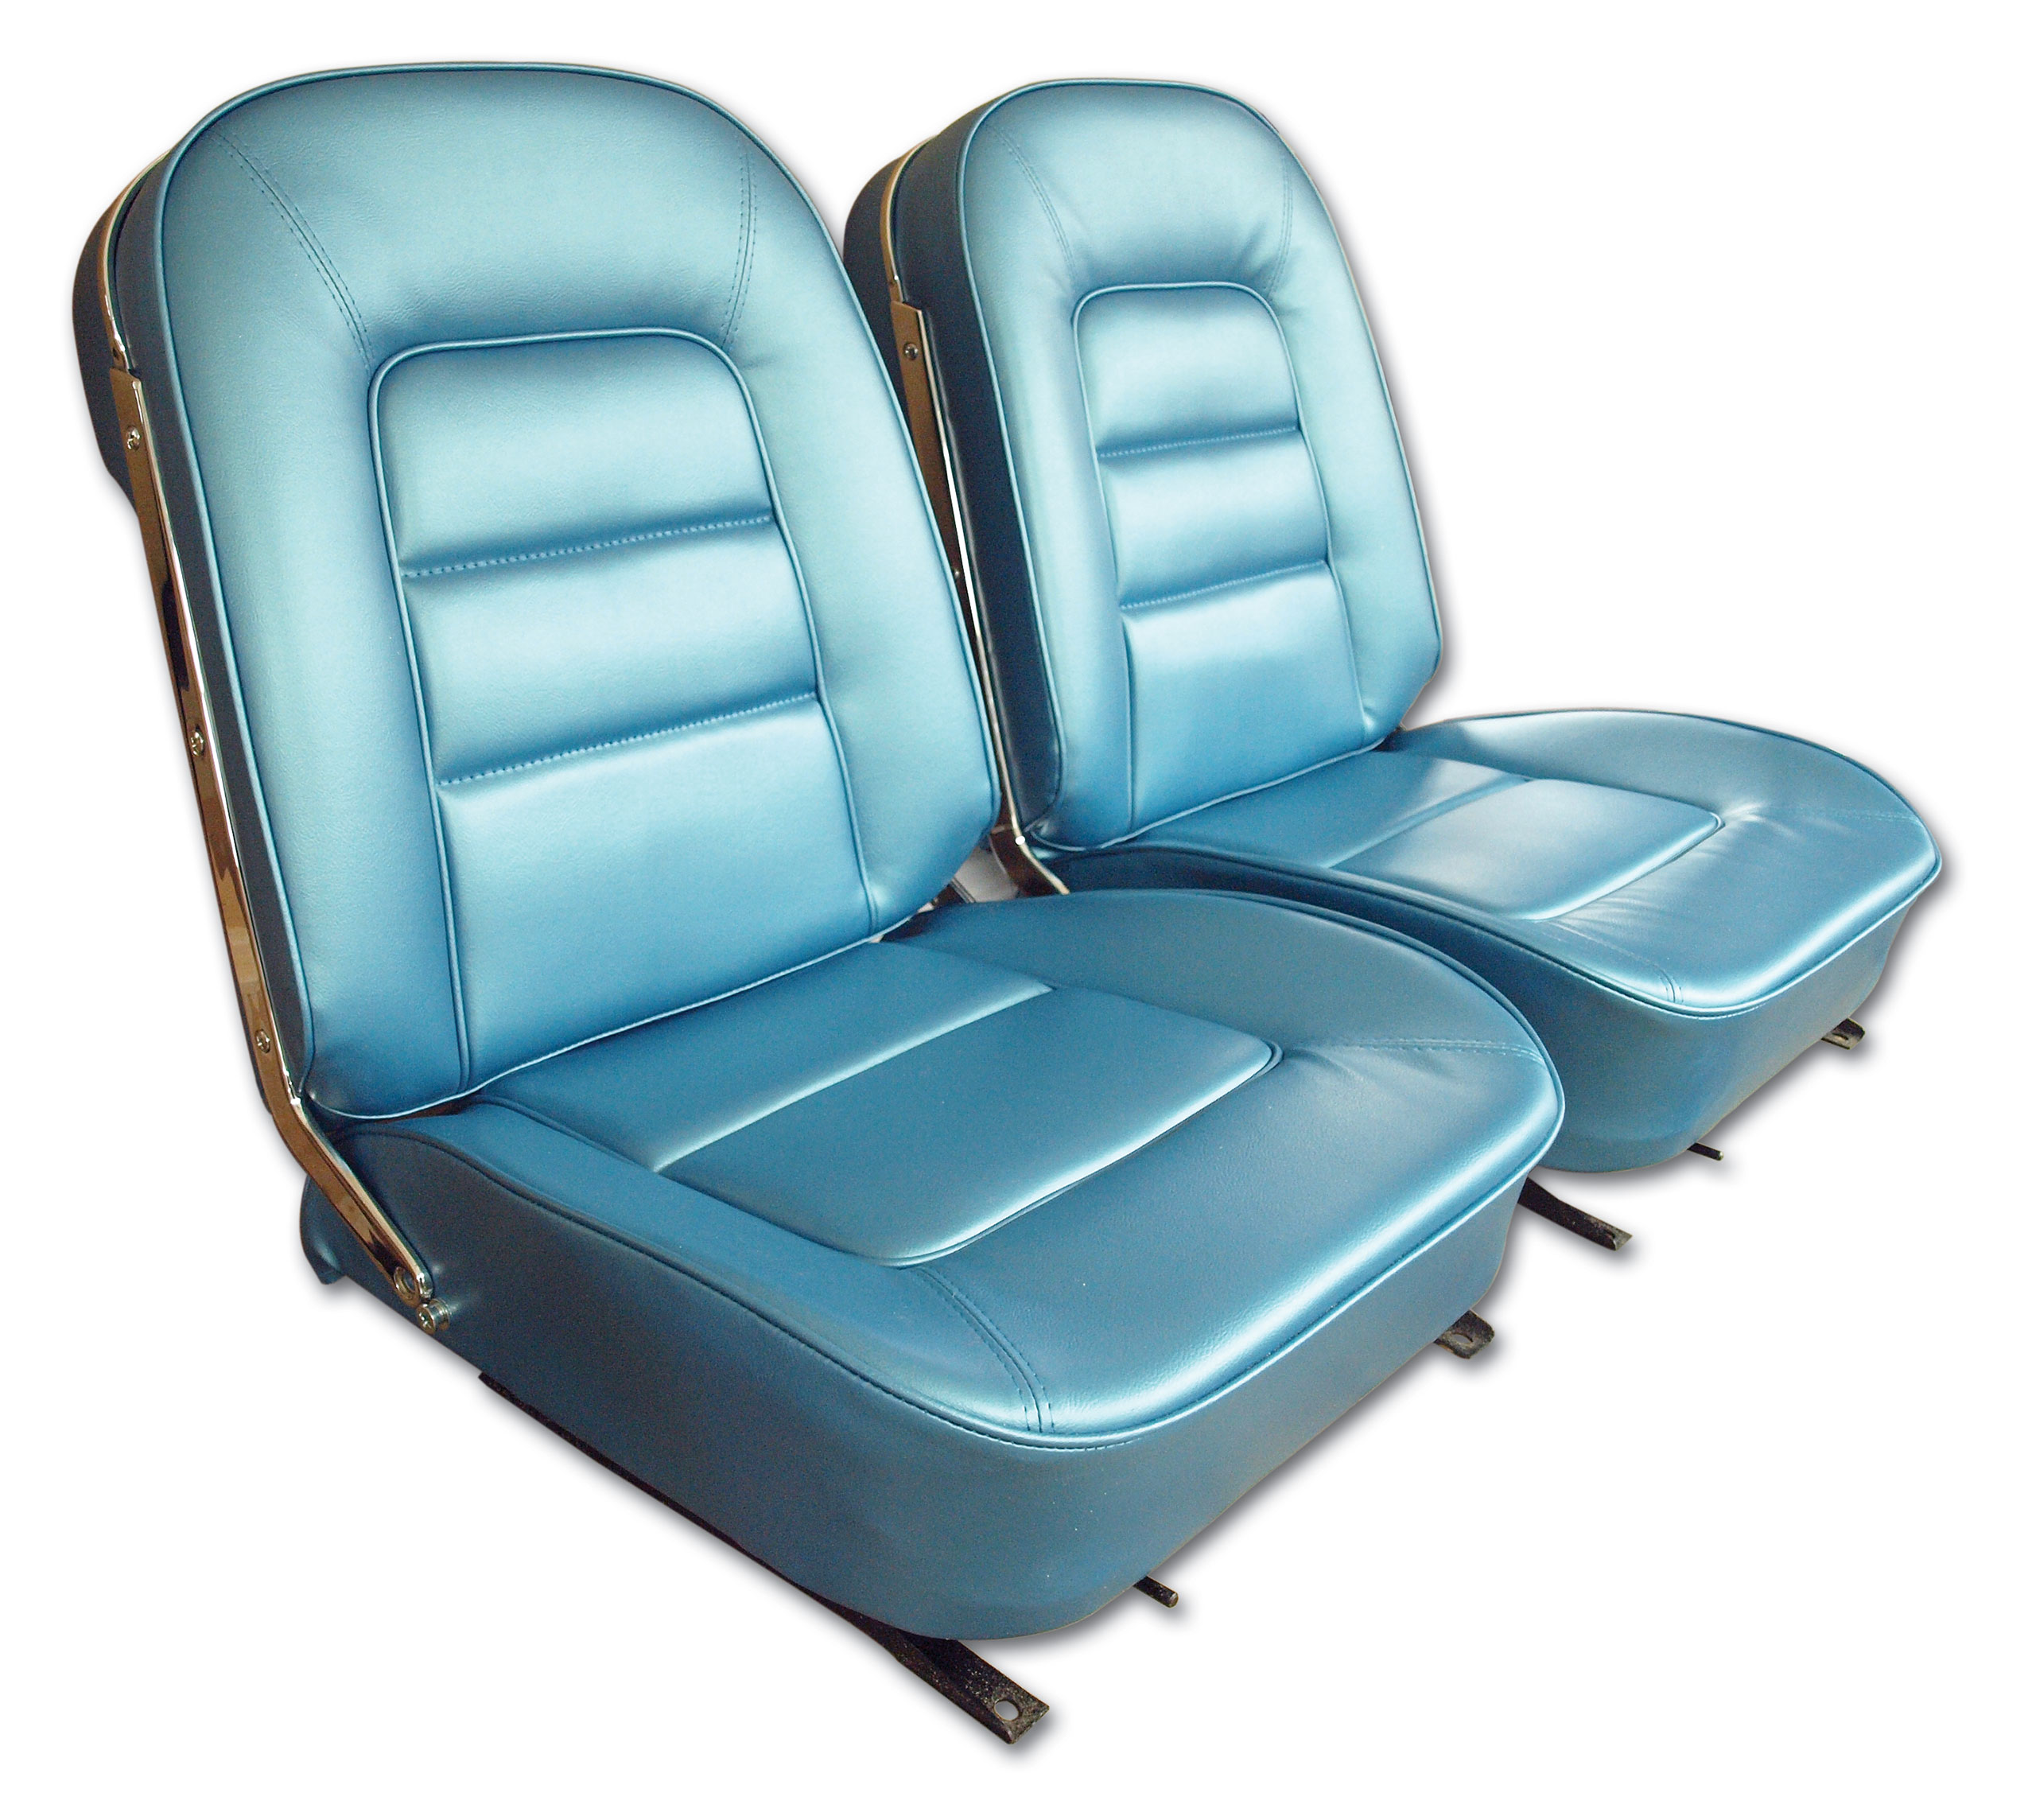 1965 Corvette C2 Vinyl Seat Covers- Bright Blue CA-417340 